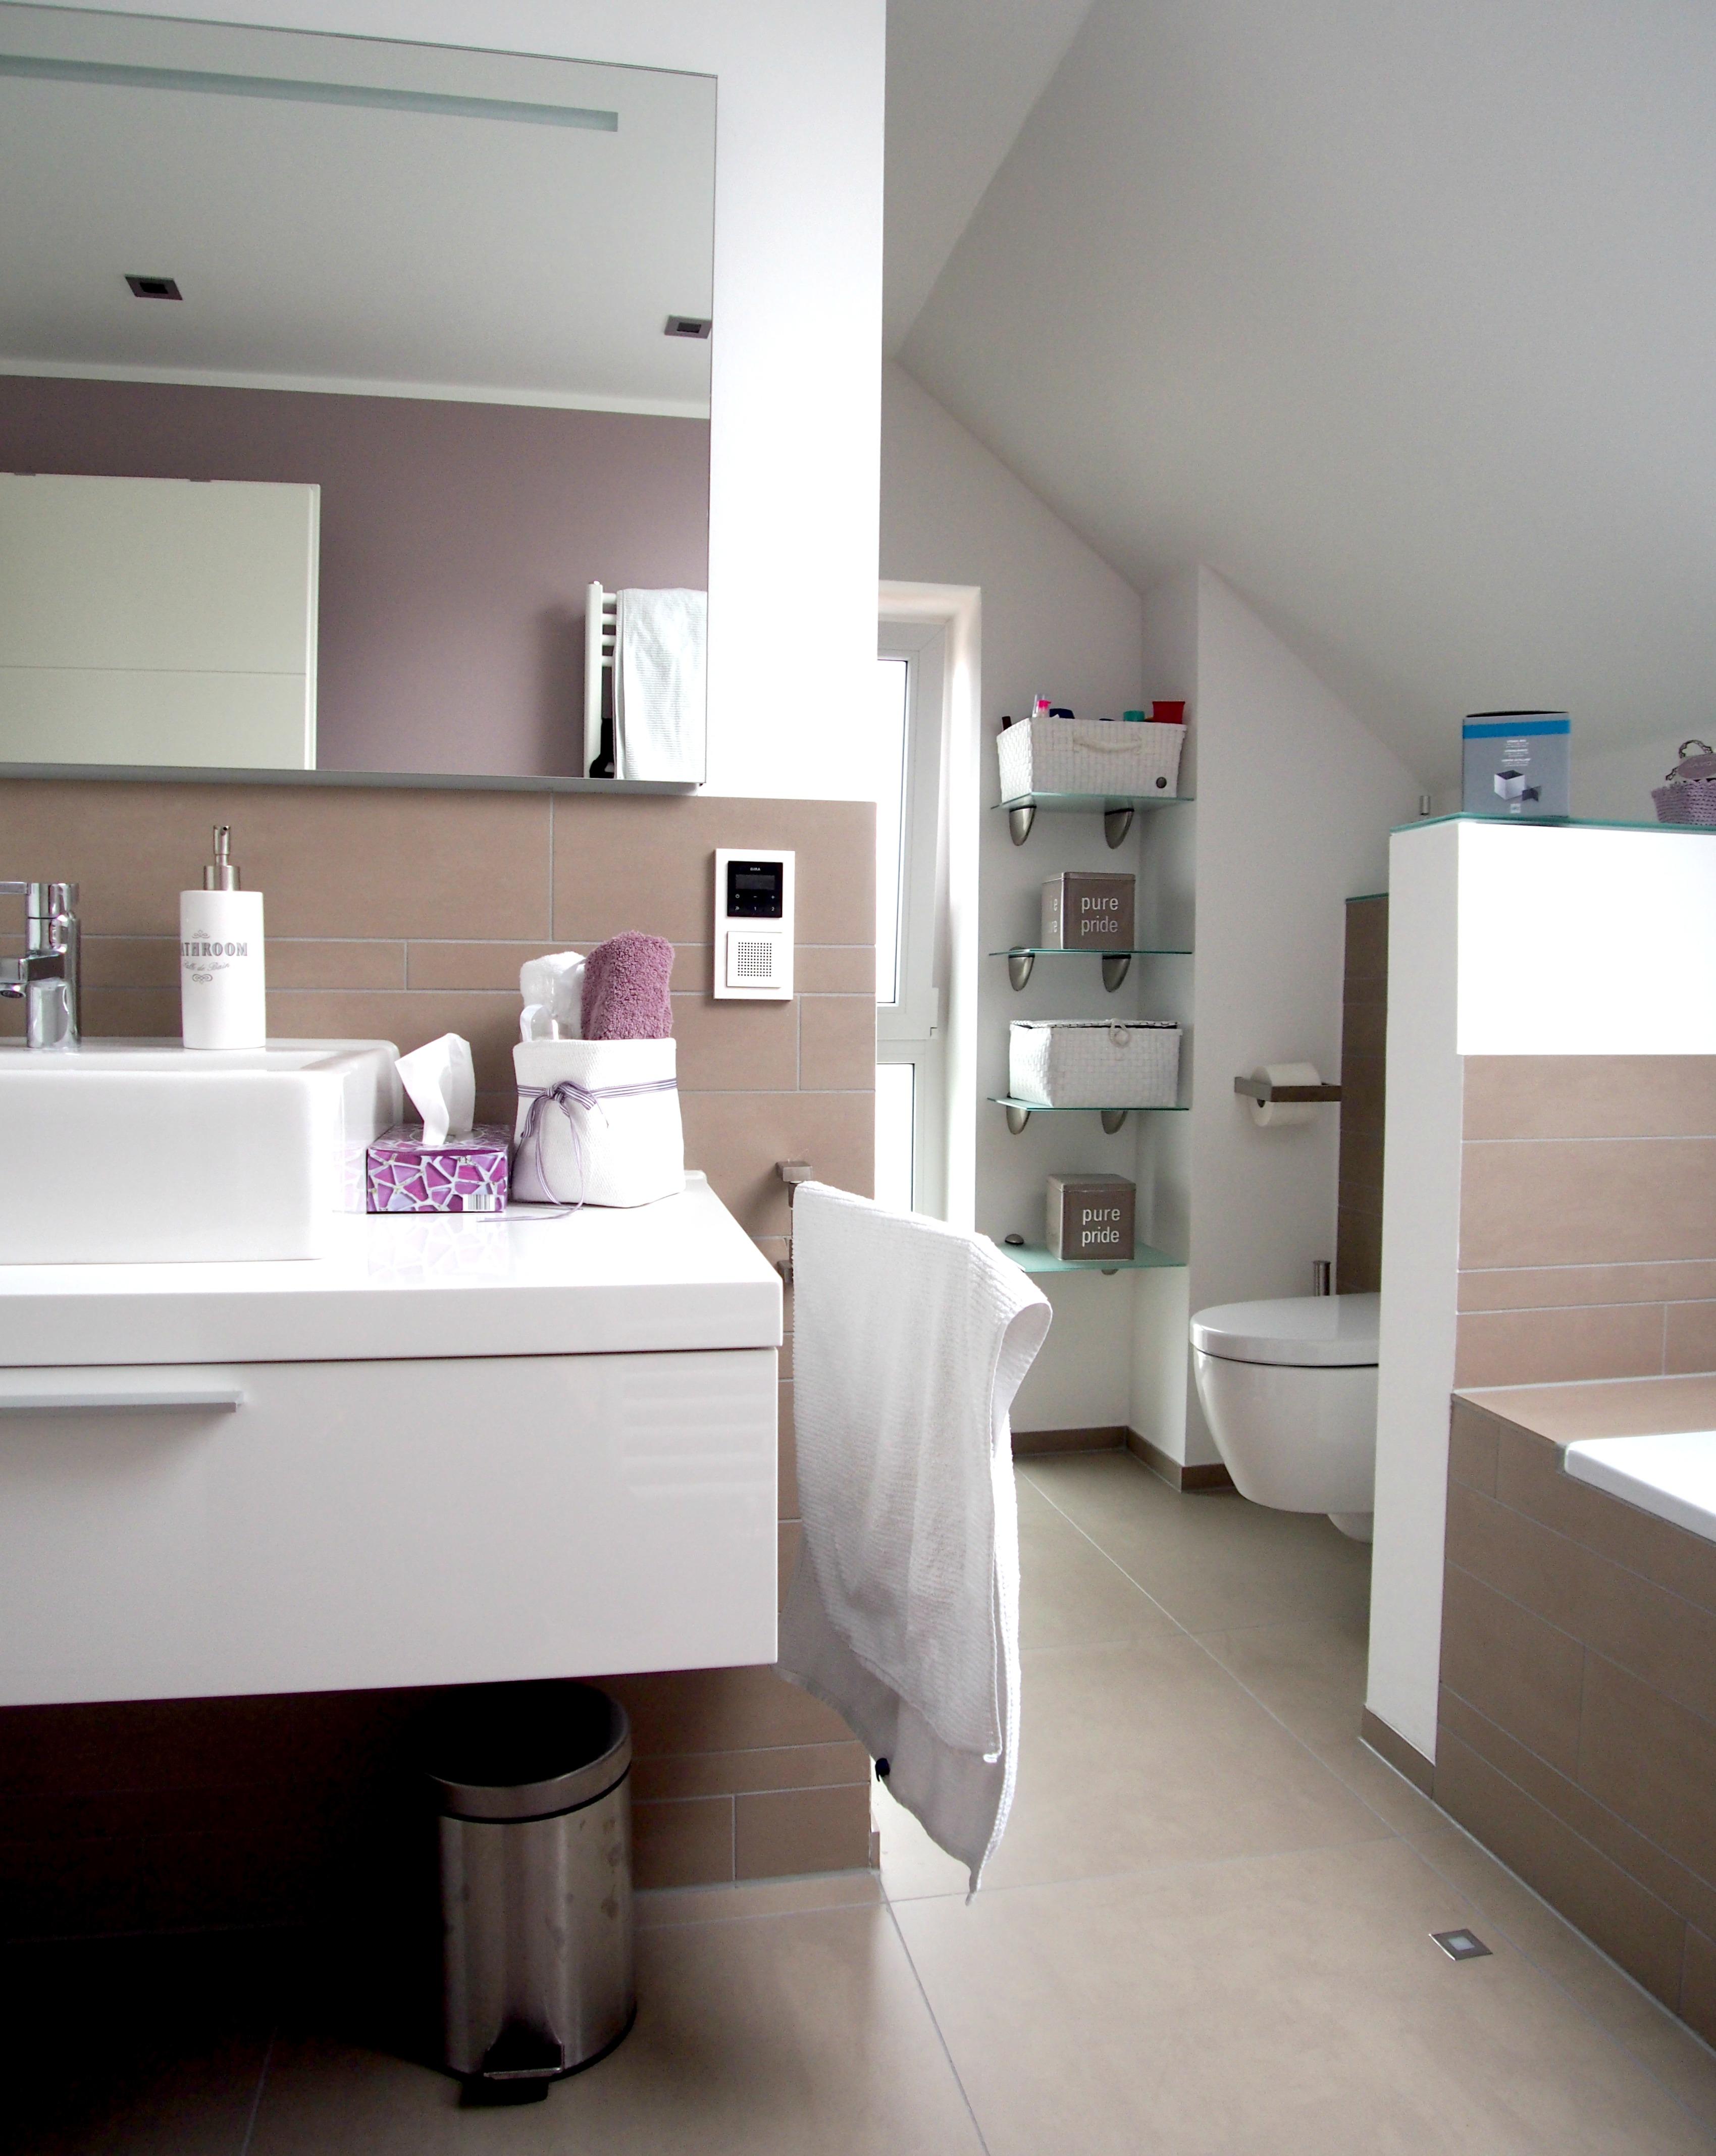 Badezimmer 2 in Stadecken #fliesen #badezimmer #badezimmereinrichtung #badidee ©Yvette Sillo